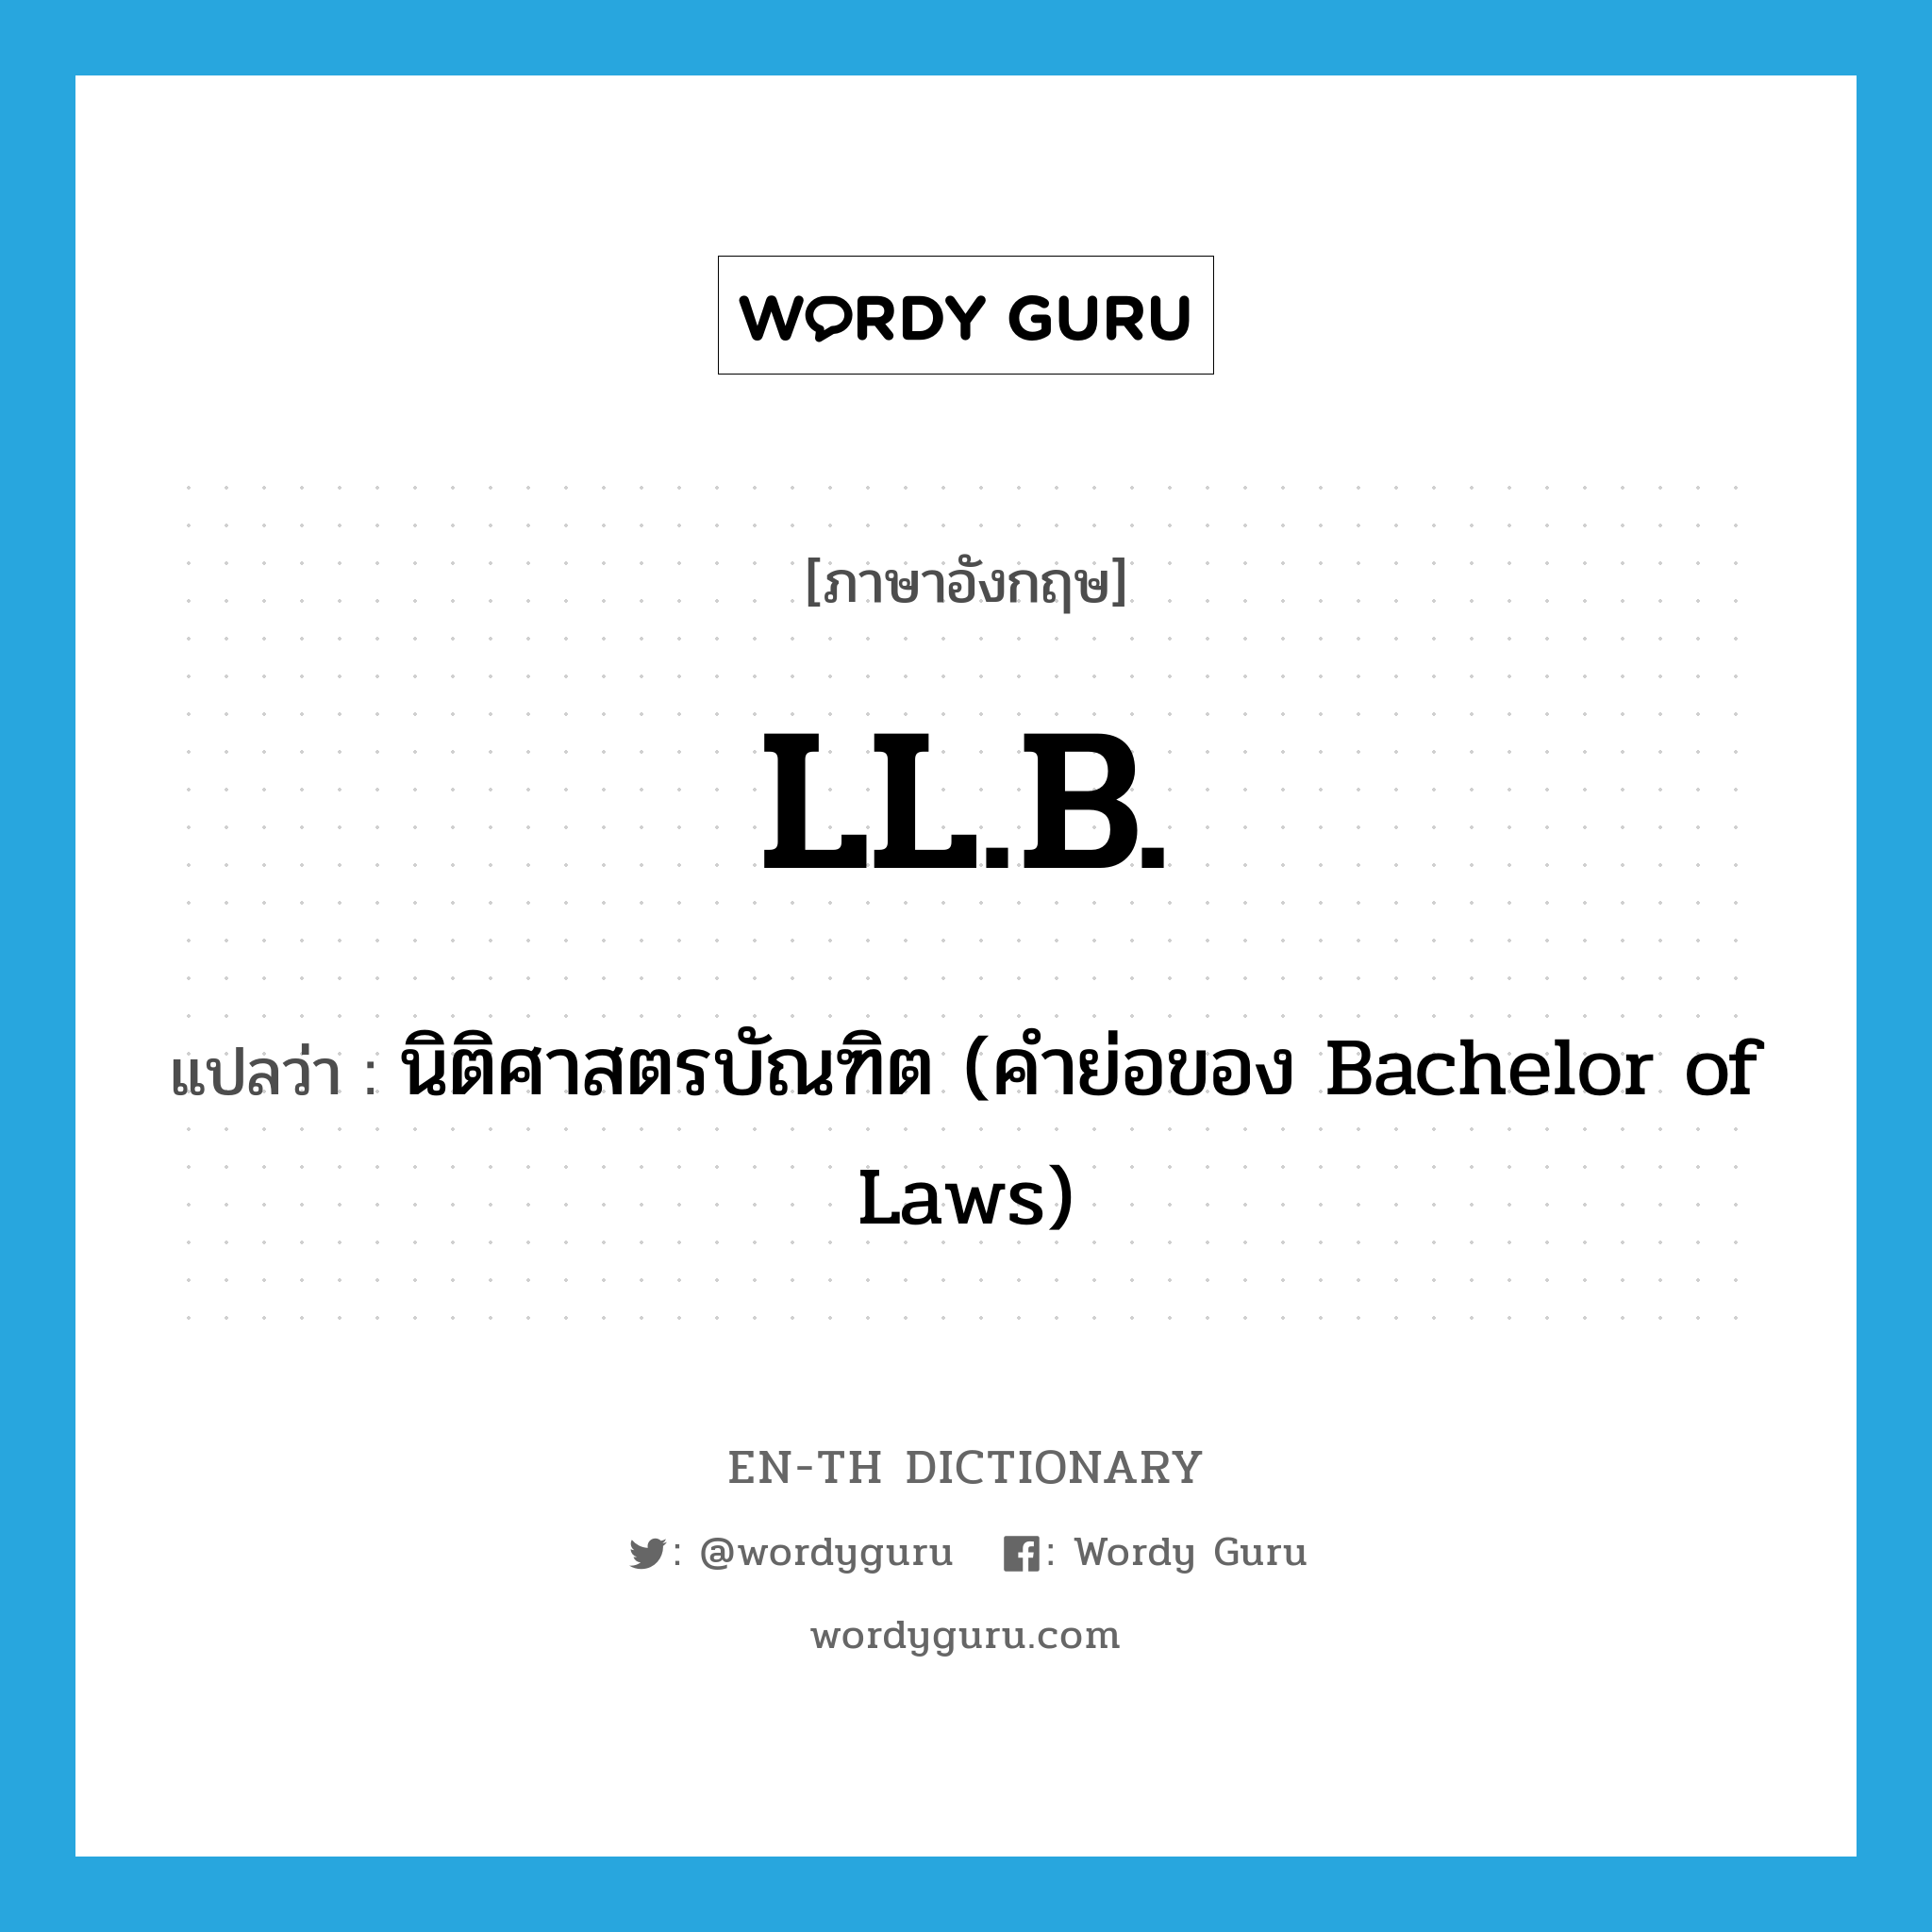 นิติศาสตรบัณฑิต (คำย่อของ Bachelor of Laws) ภาษาอังกฤษ?, คำศัพท์ภาษาอังกฤษ นิติศาสตรบัณฑิต (คำย่อของ Bachelor of Laws) แปลว่า LL.B. ประเภท ABBR หมวด ABBR